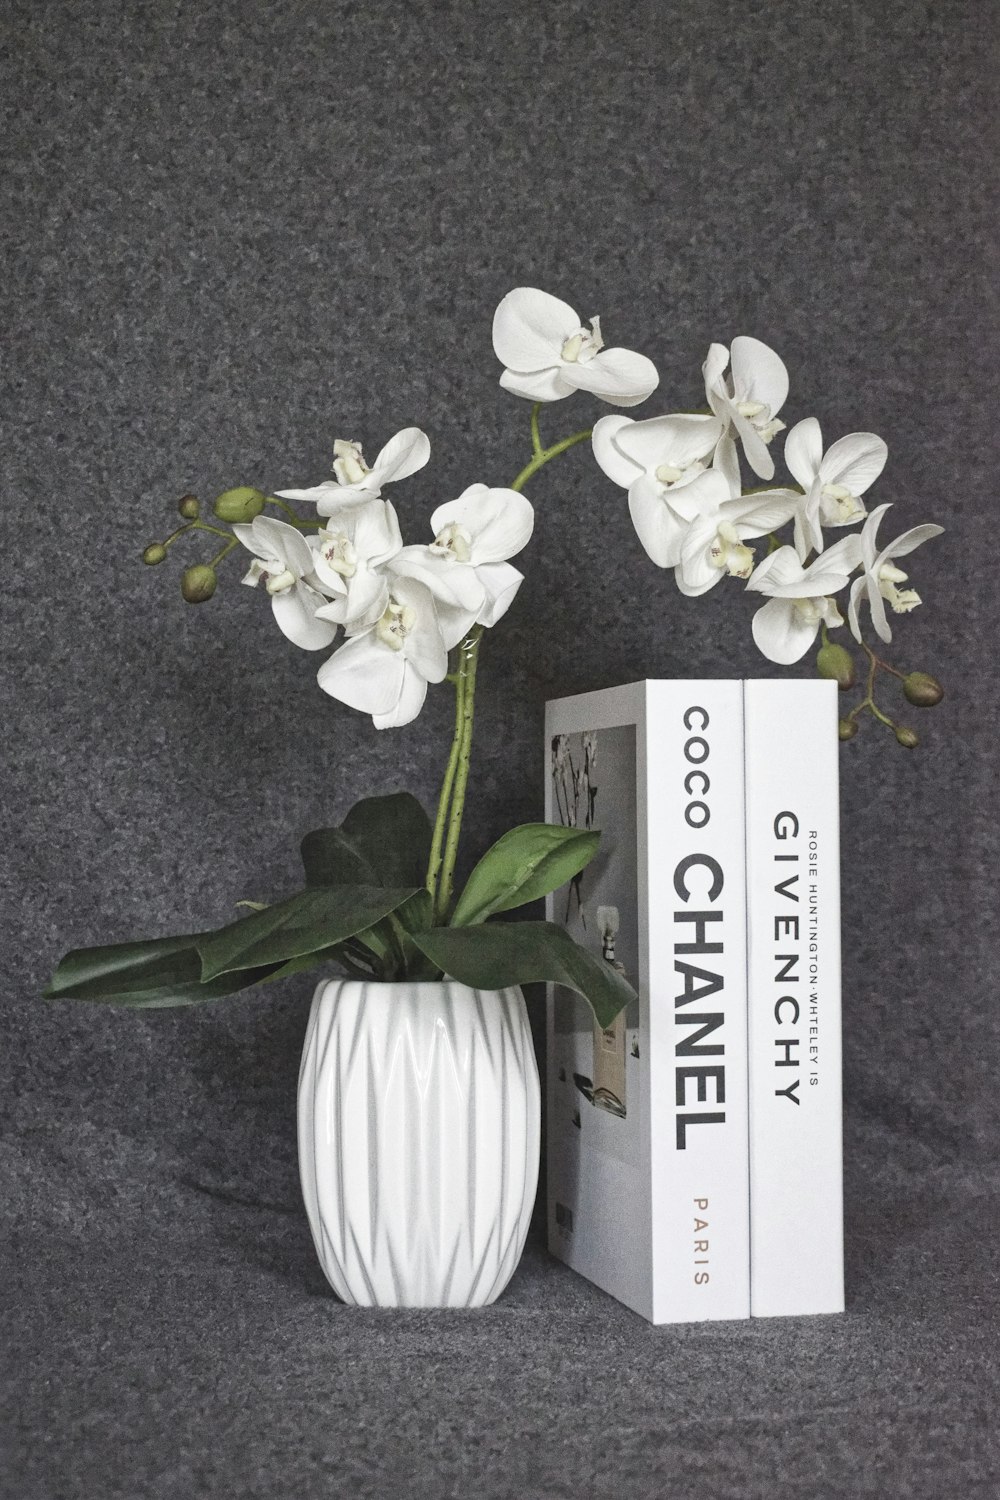 Un vaso bianco pieno di fiori bianchi accanto a un libro